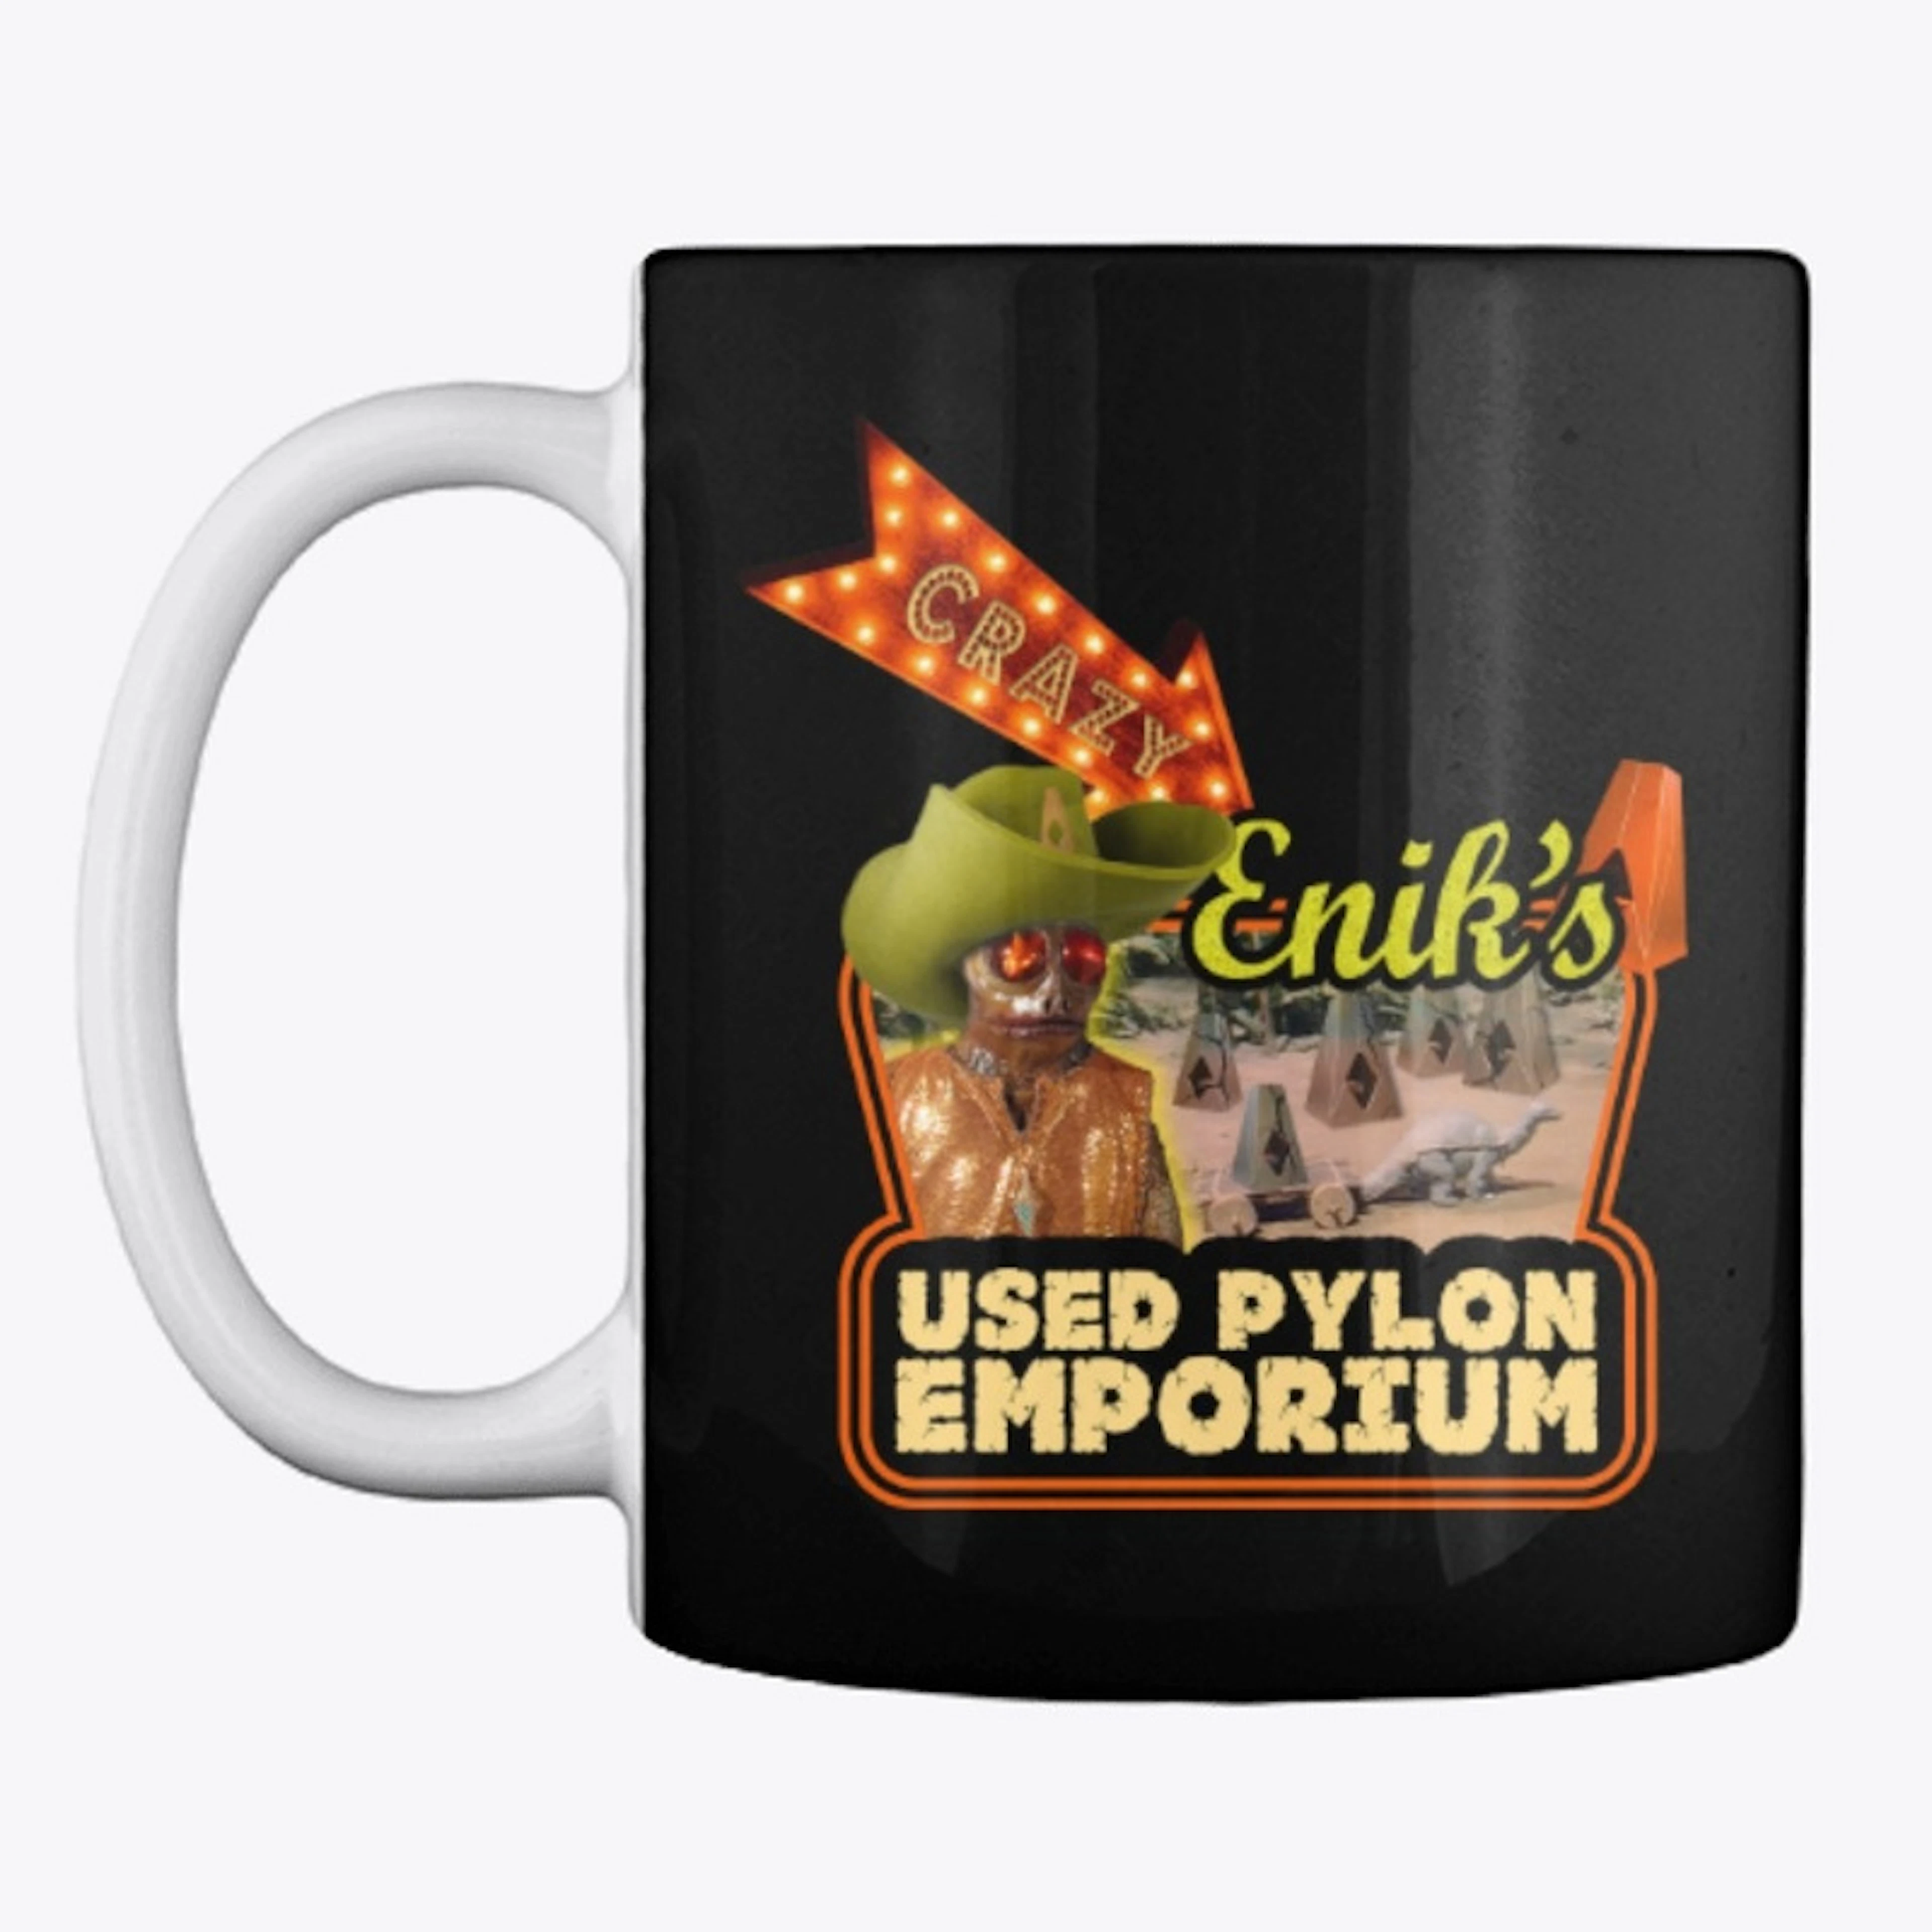 Crazy Enik's Used Pylon Emporium